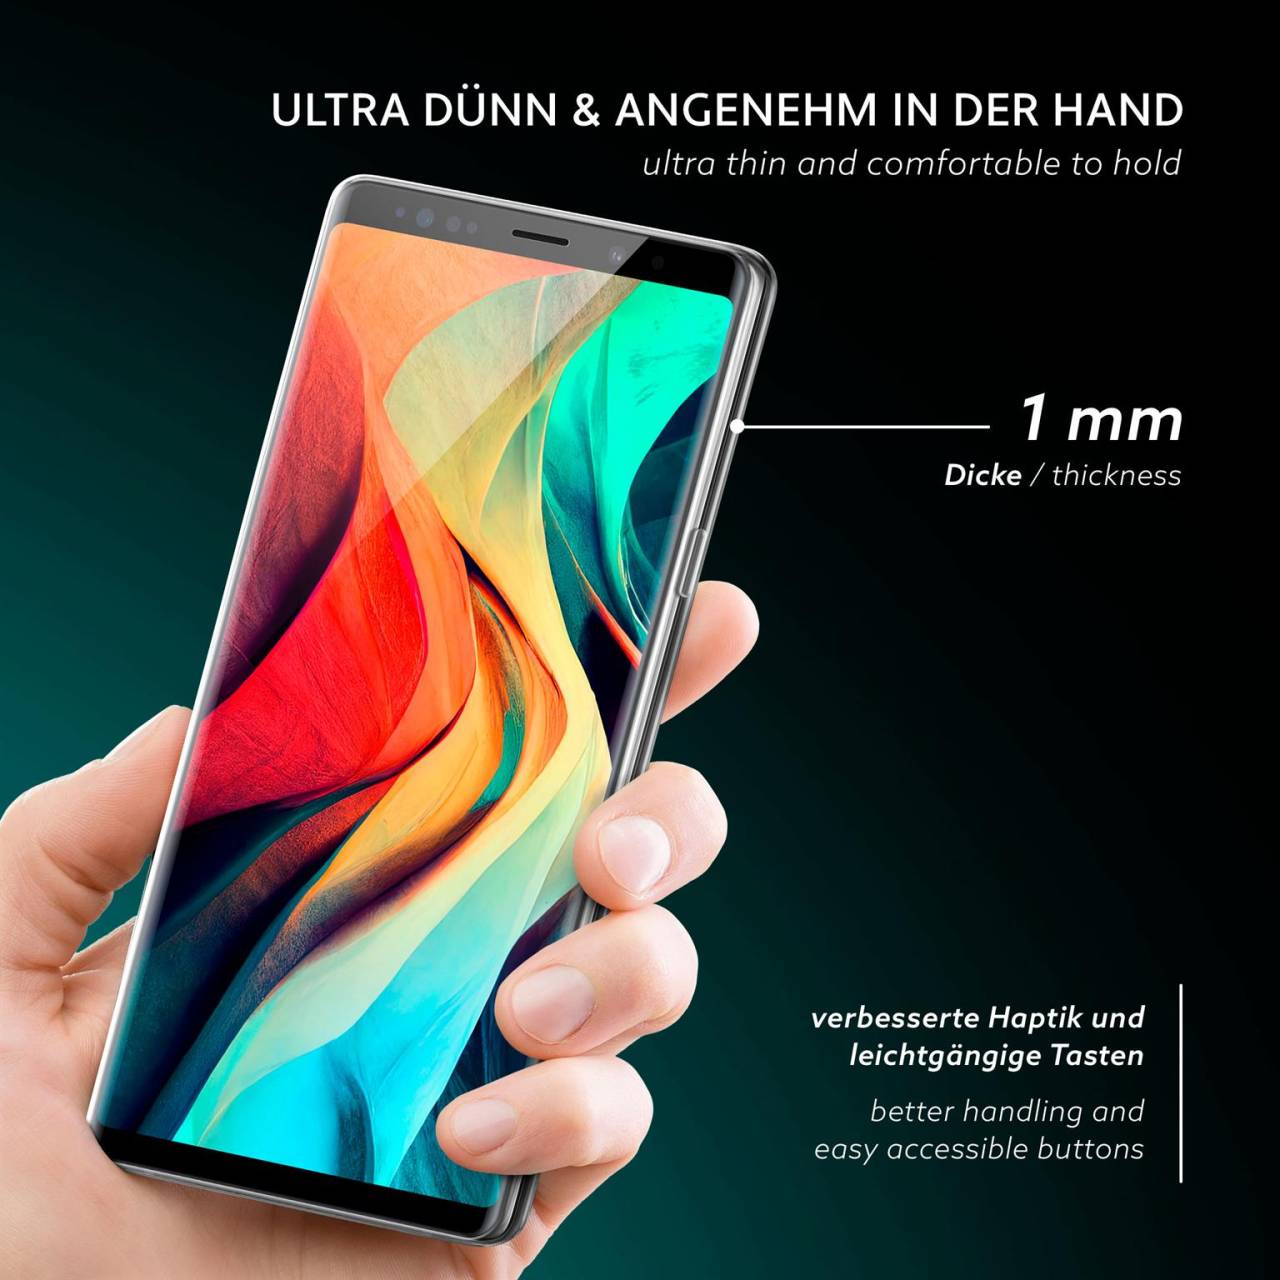 moex Aero Case für Samsung Galaxy Note 9 – Durchsichtige Hülle aus Silikon, Ultra Slim Handyhülle